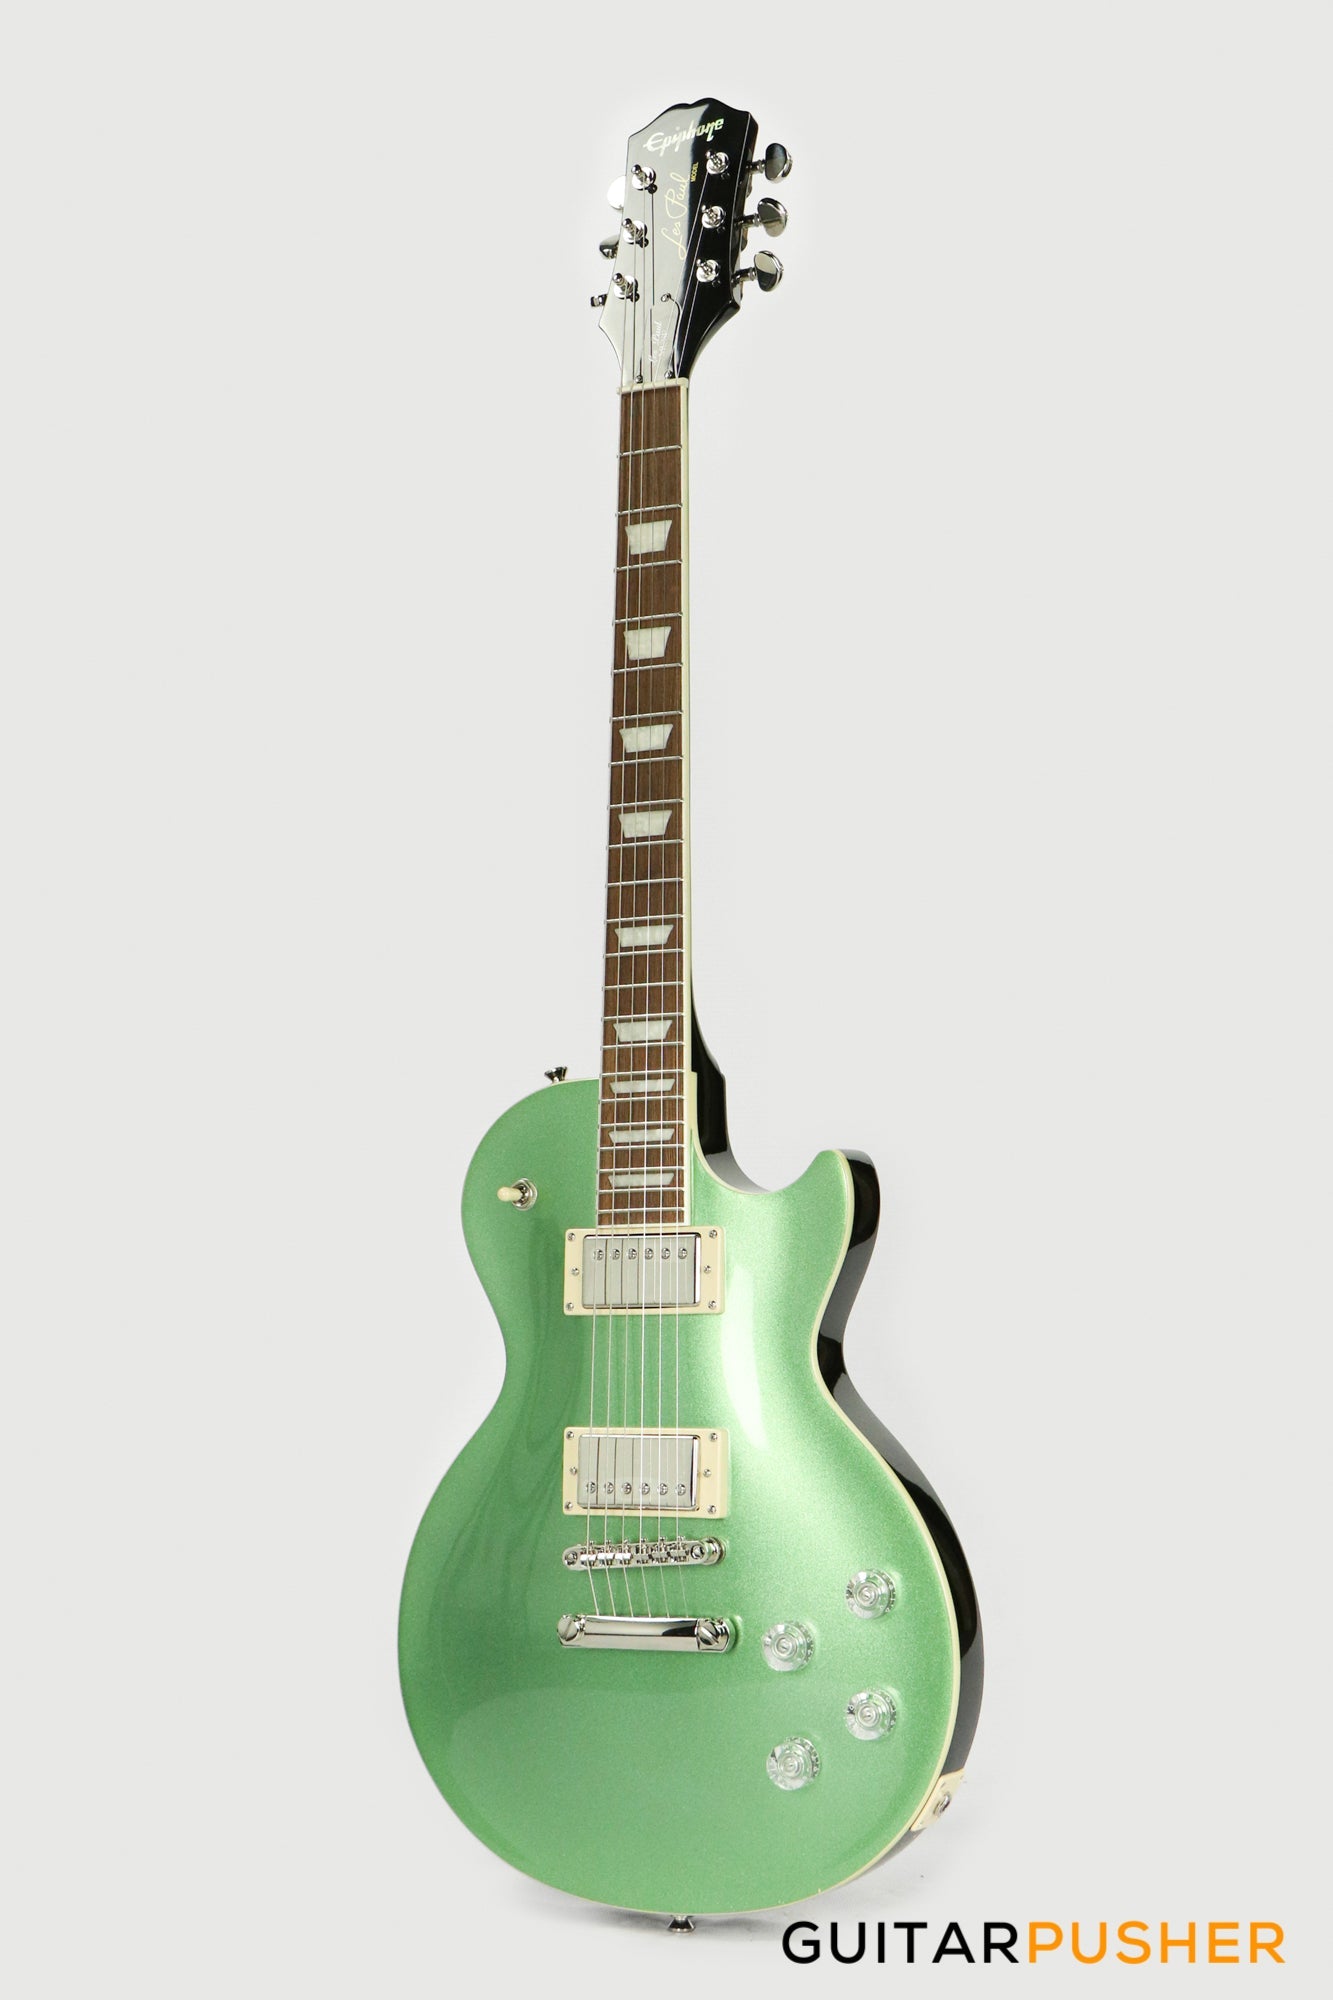 Epiphone Les Paul Muse Electric Guitar - Wanderlust Metallic Green